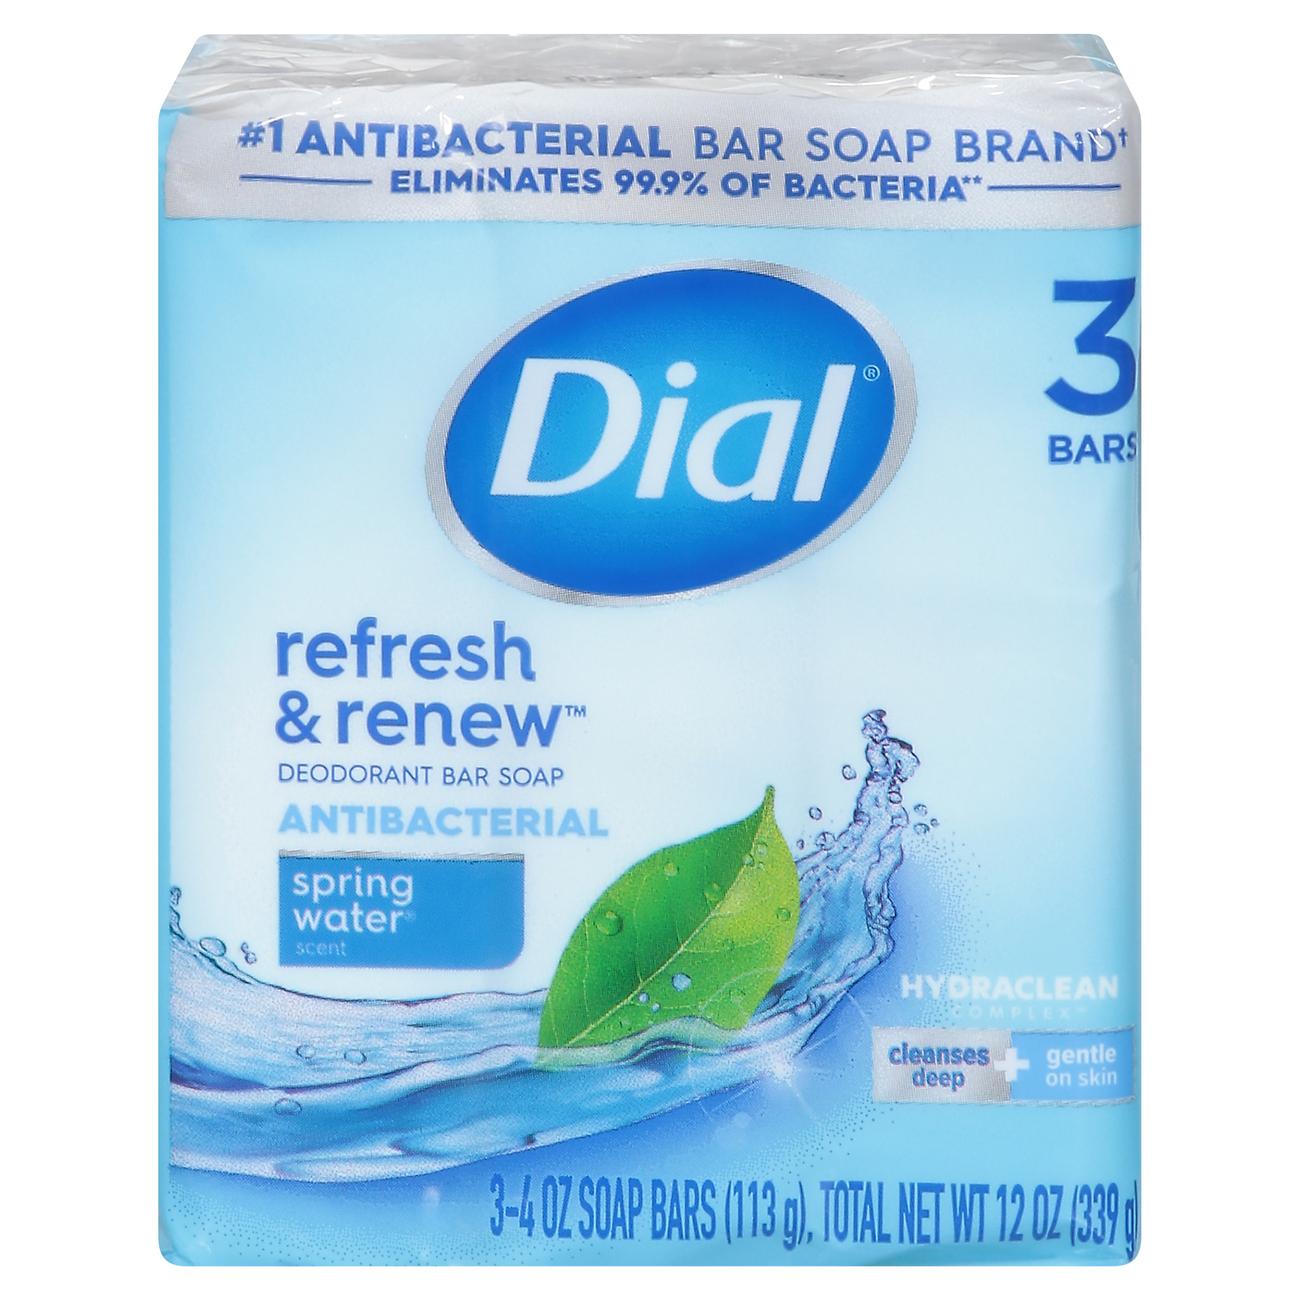 Dial Antibacterial Bar Soap - Spring Water; image 1 of 5